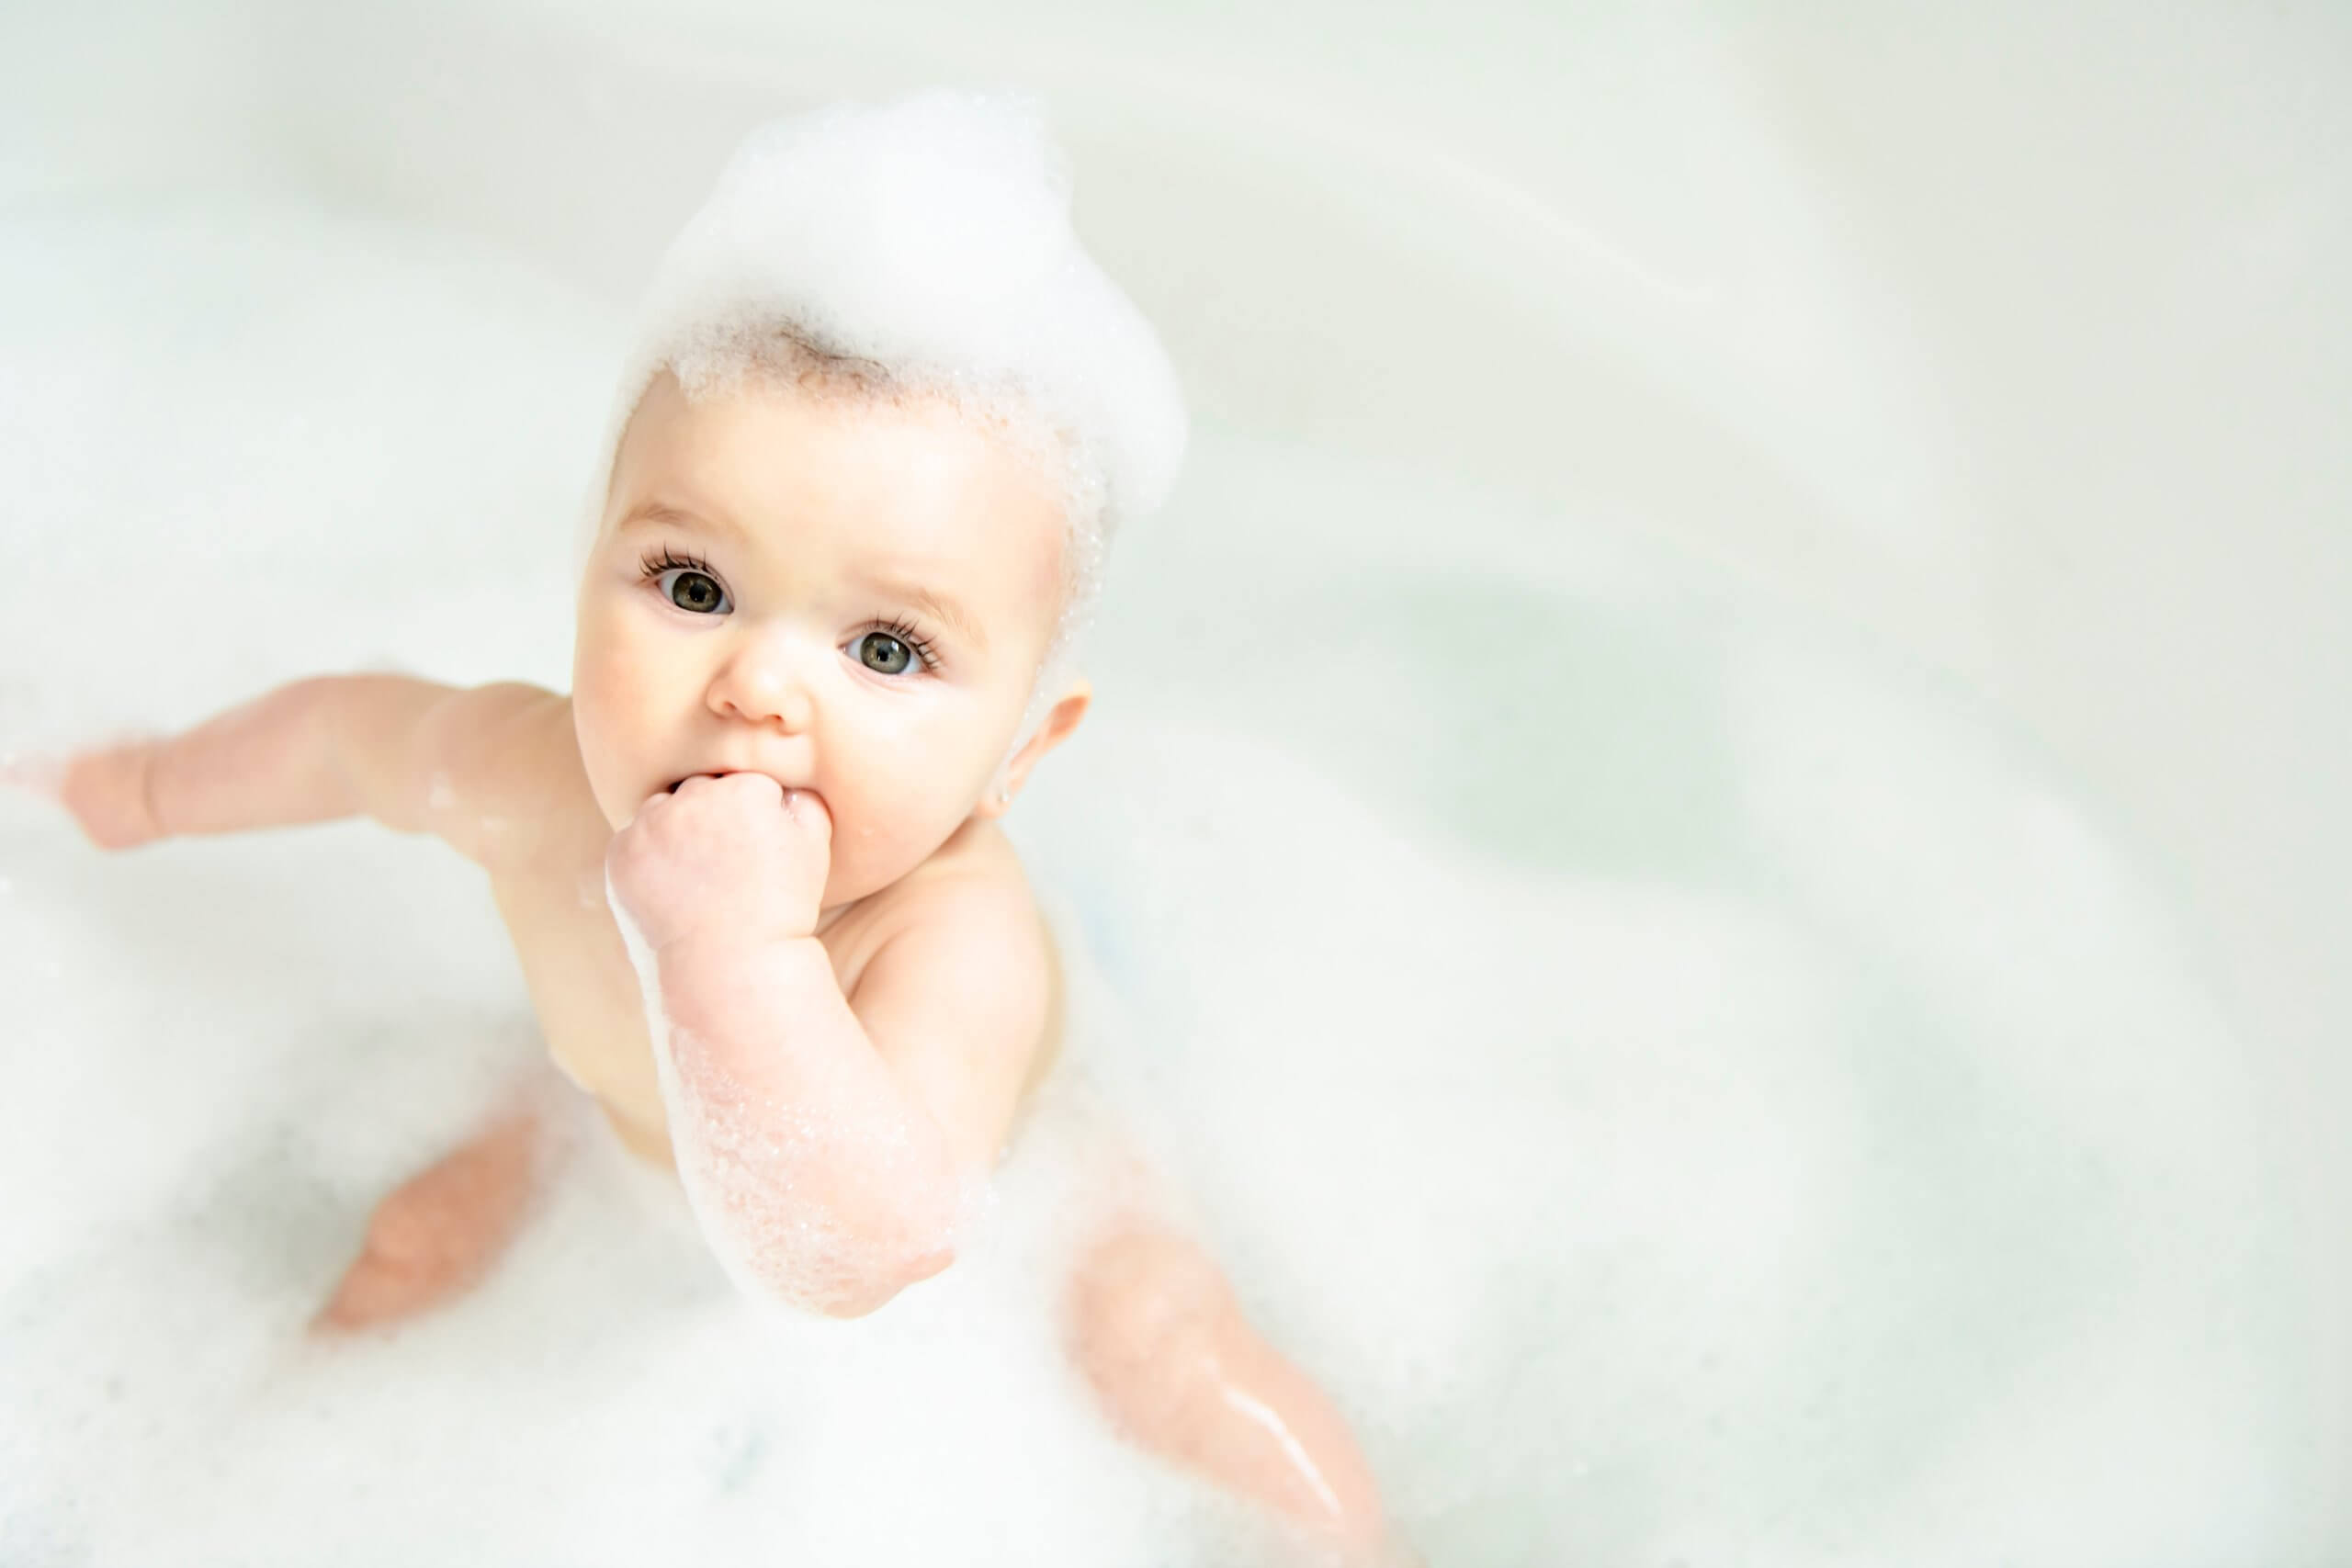 Bañar al bebé en la habitación: cambiador o bañera